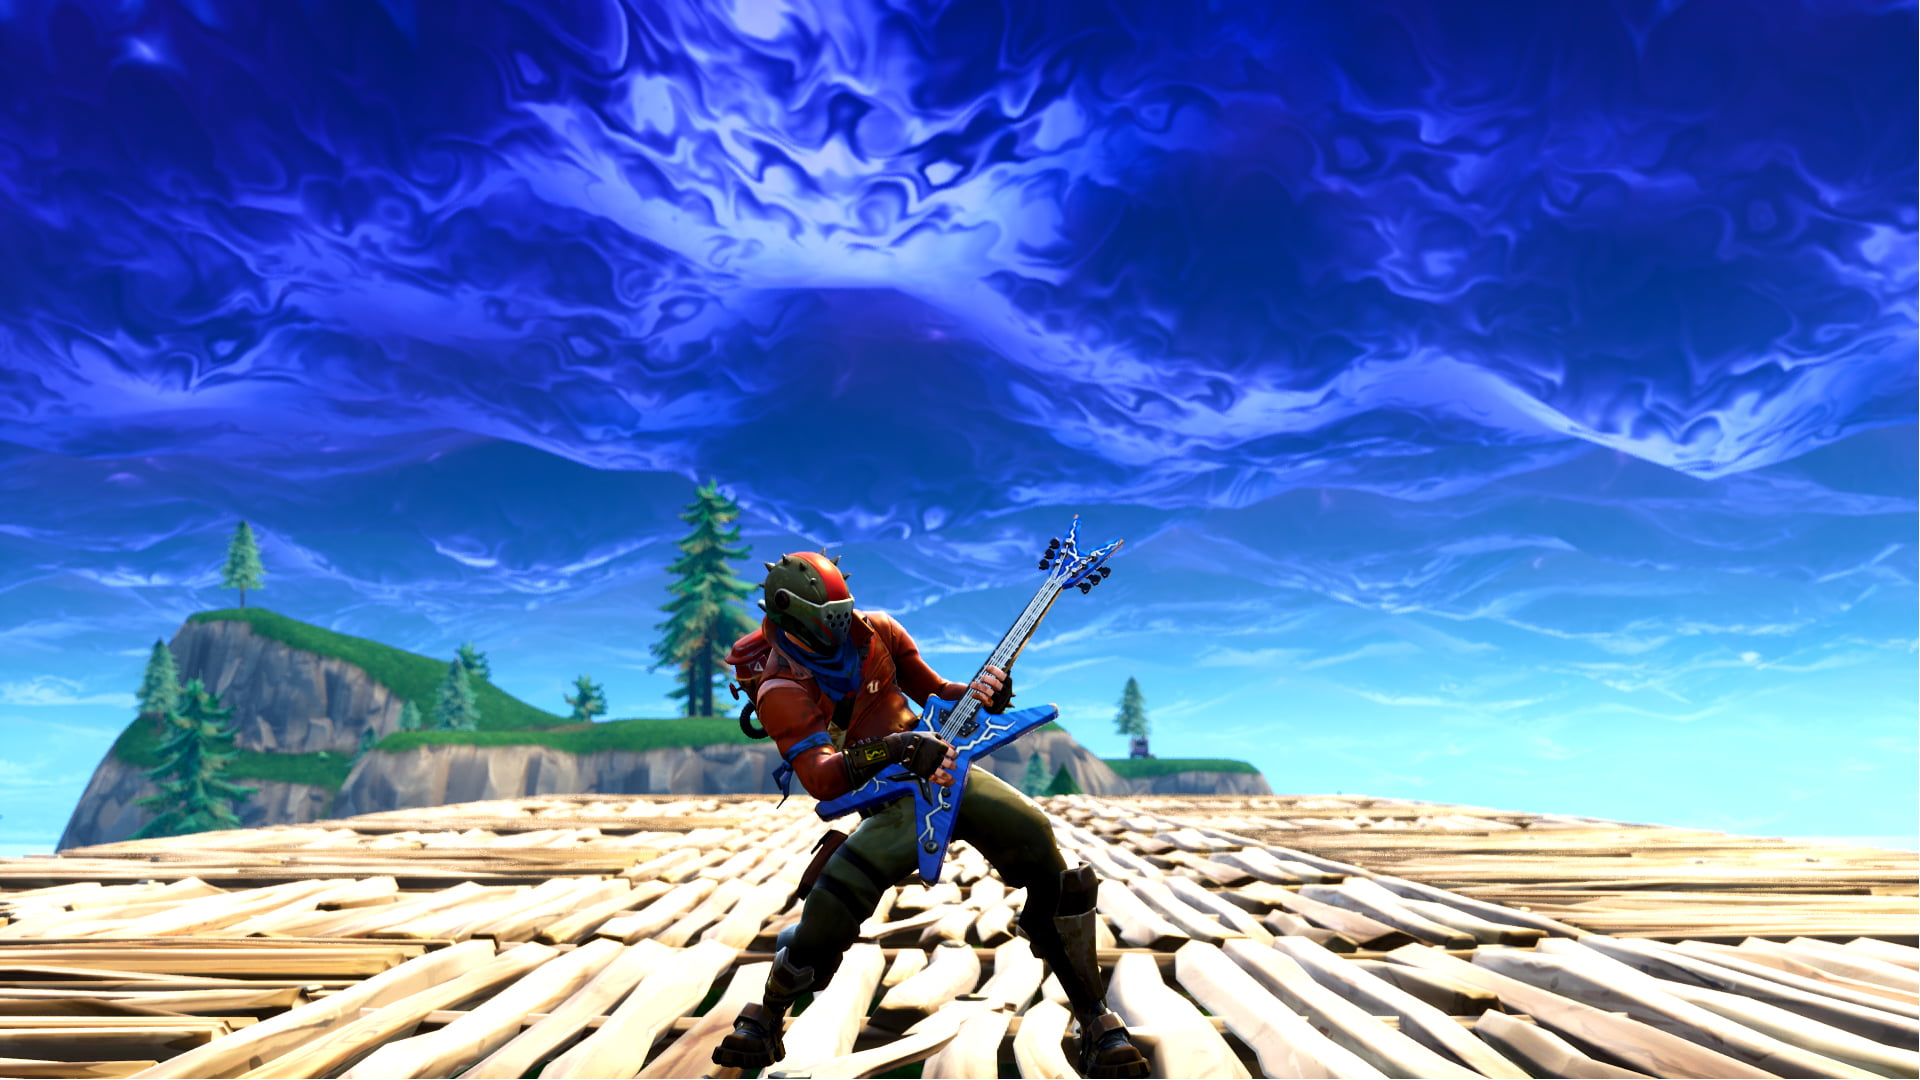 Fortnite game screenshot, guitar, one person, wood - material